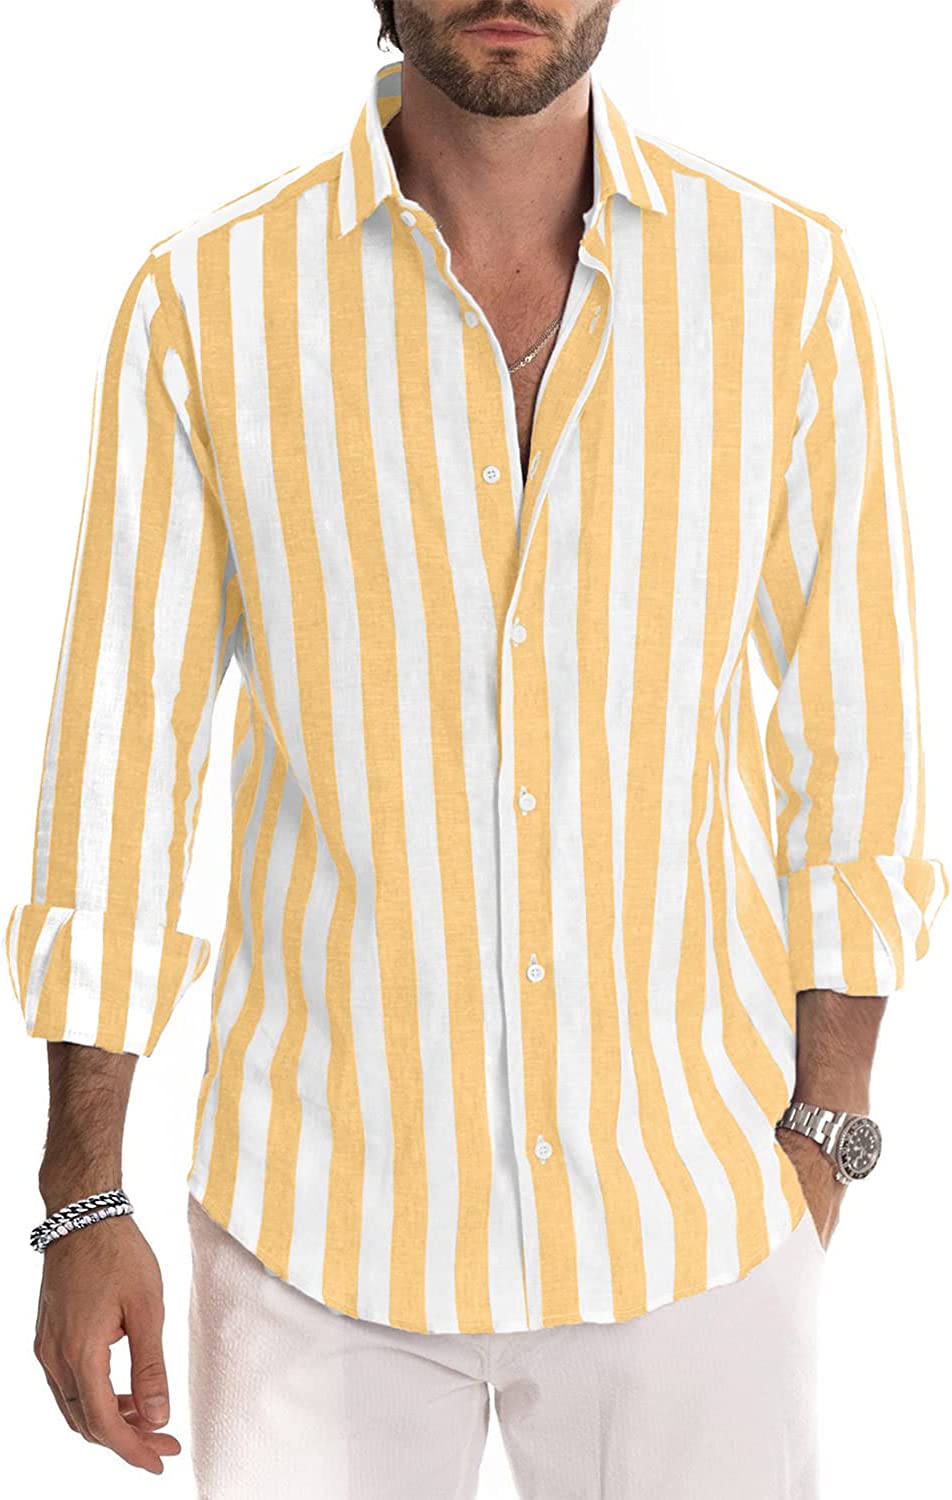 JMIERR Men's Linen Shirts Casual Long Sleeve Button-Down Striped Dress Shirt  eBay